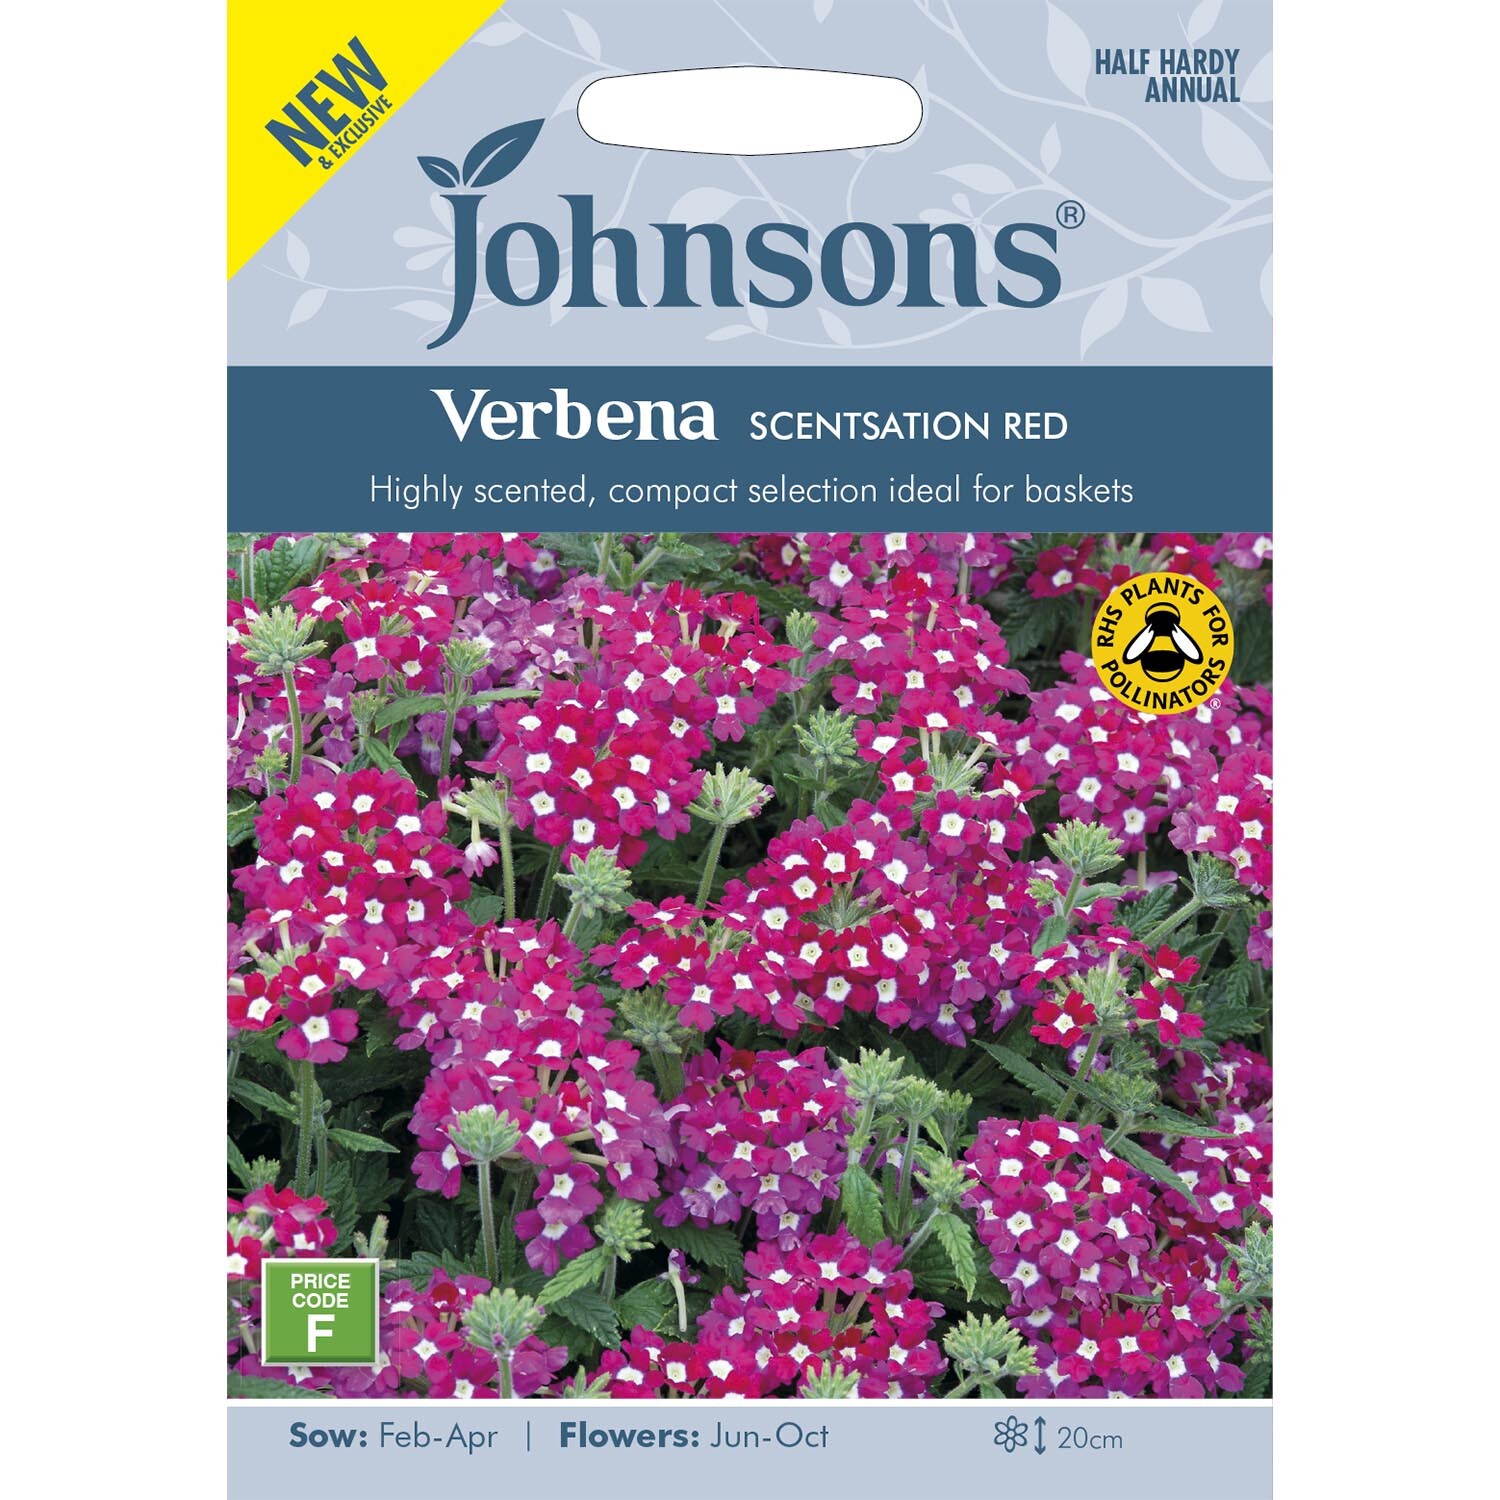 Johnsons Verbena Scentsation Red Flower Seeds Image 2